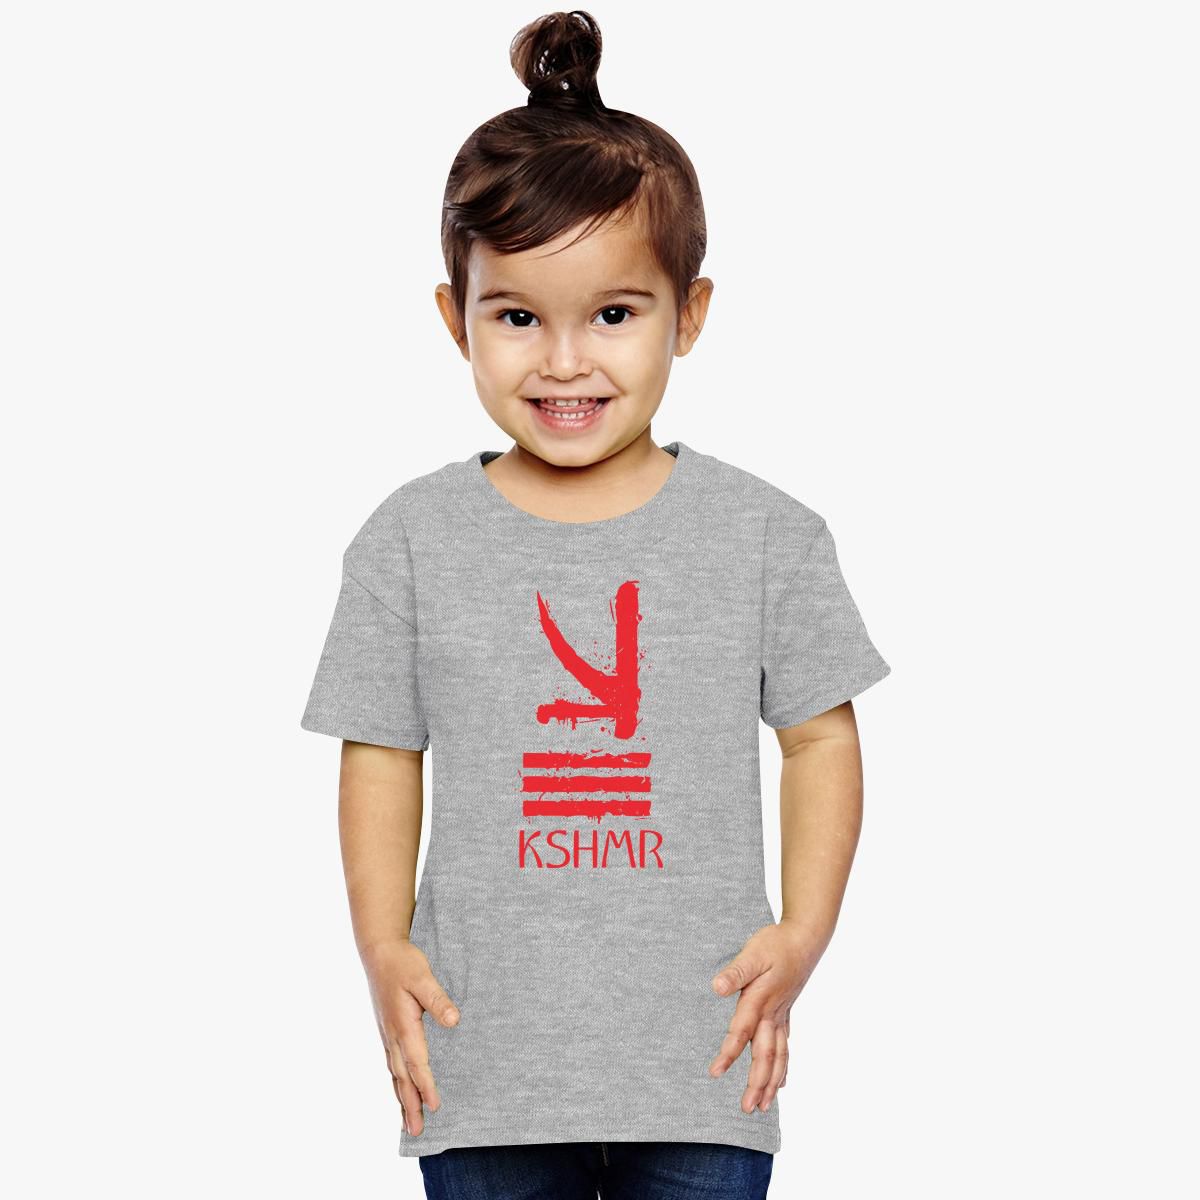 Bunke af snemand Forløber kshmr logo Toddler T-shirt - Hoodiego